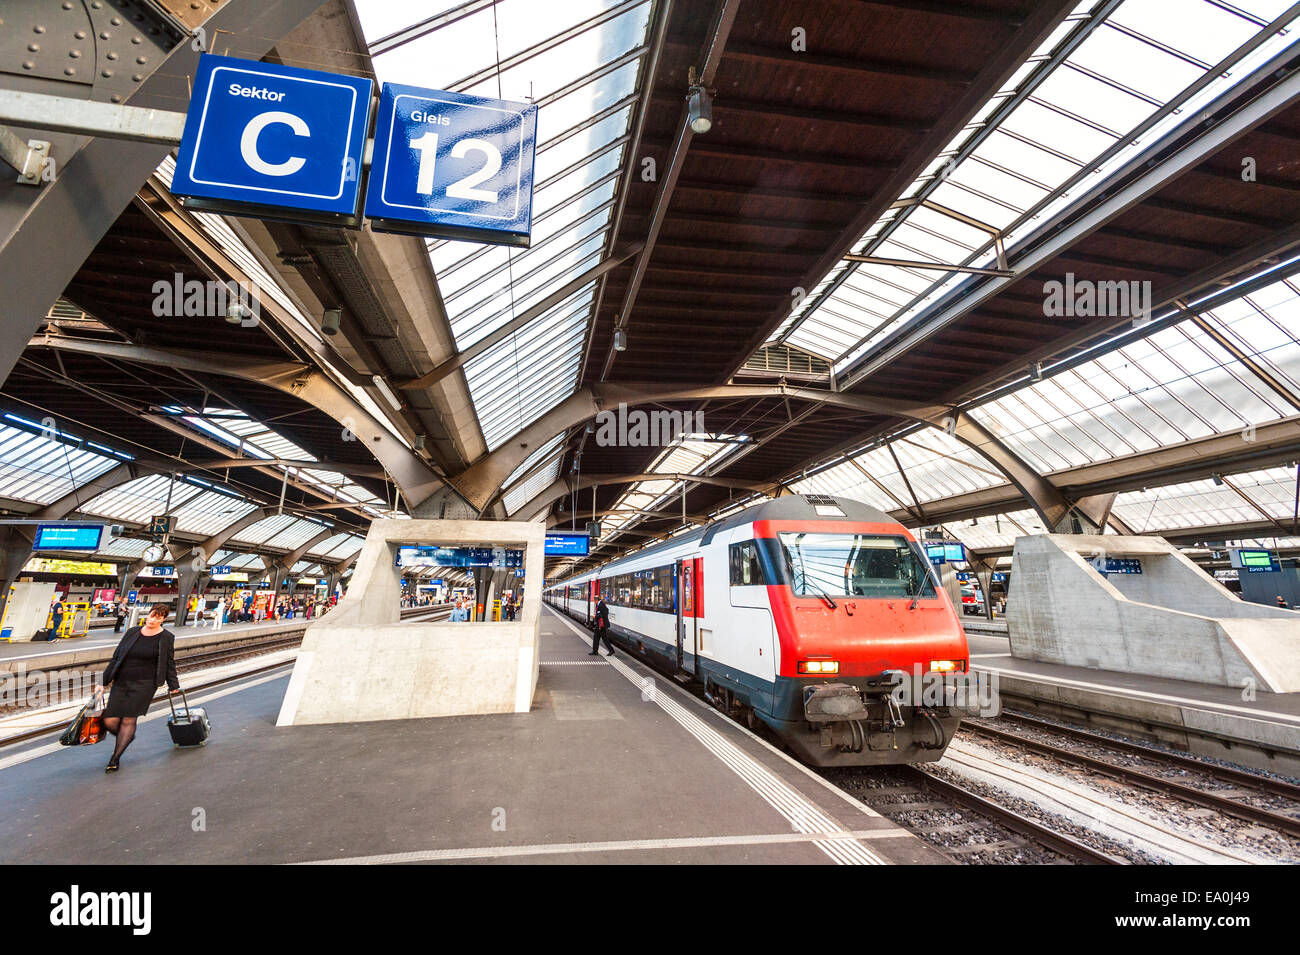 Platform 12 at Zurich main railway station (Bahnhof) Stock Photo